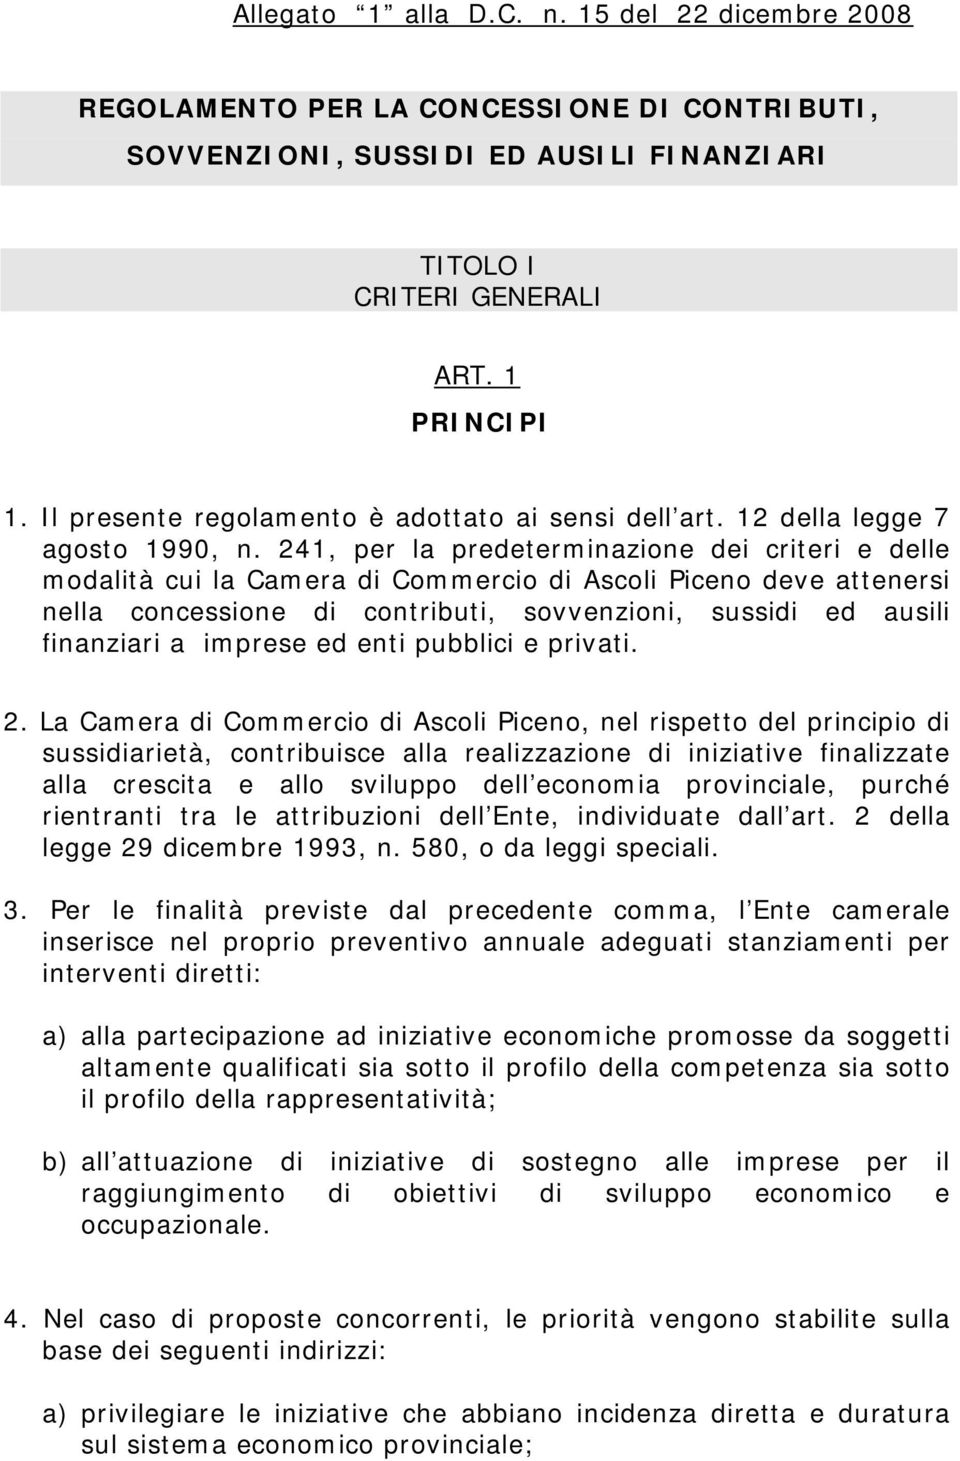 241, per la predeterminazione dei criteri e delle modalità cui la Camera di Commercio di Ascoli Piceno deve attenersi nella concessione di contributi, sovvenzioni, sussidi ed ausili finanziari a